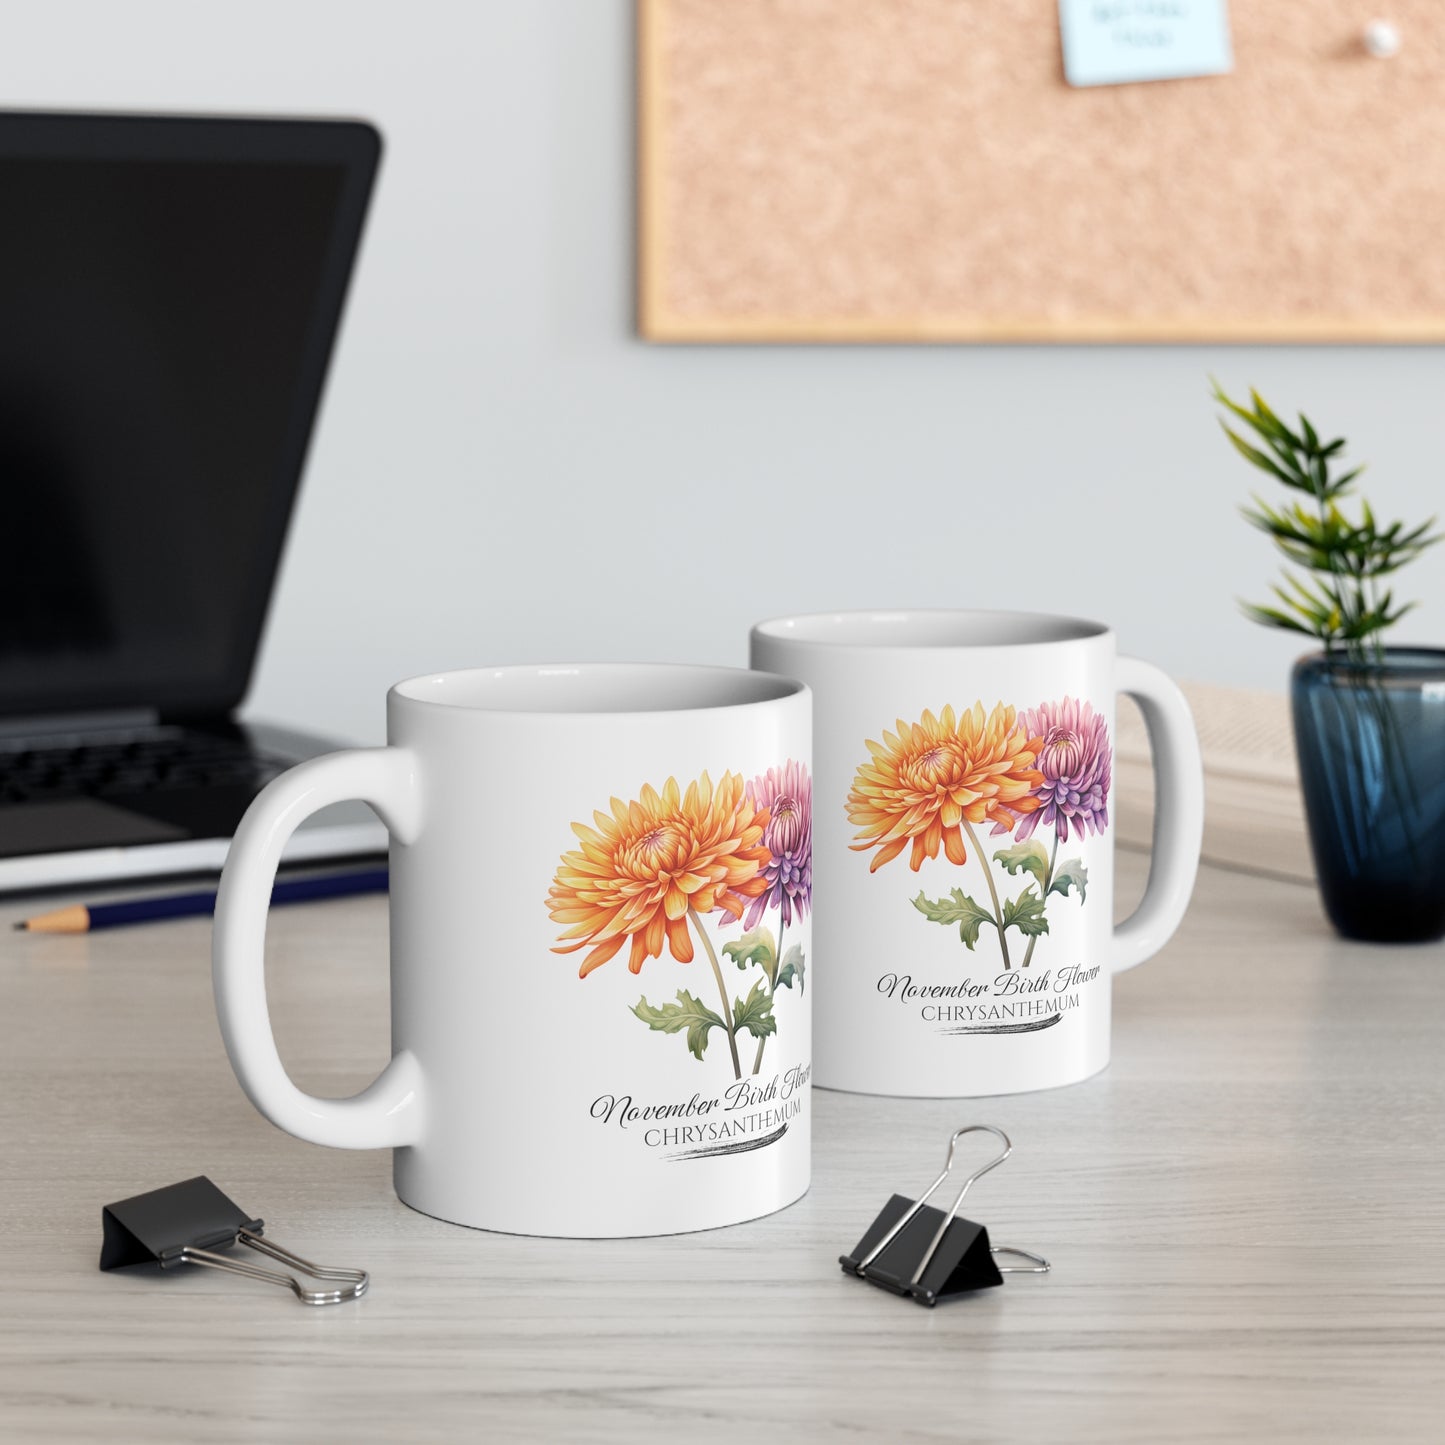 November Birth Flower (Chrysanthemum): Ceramic Mug 11oz